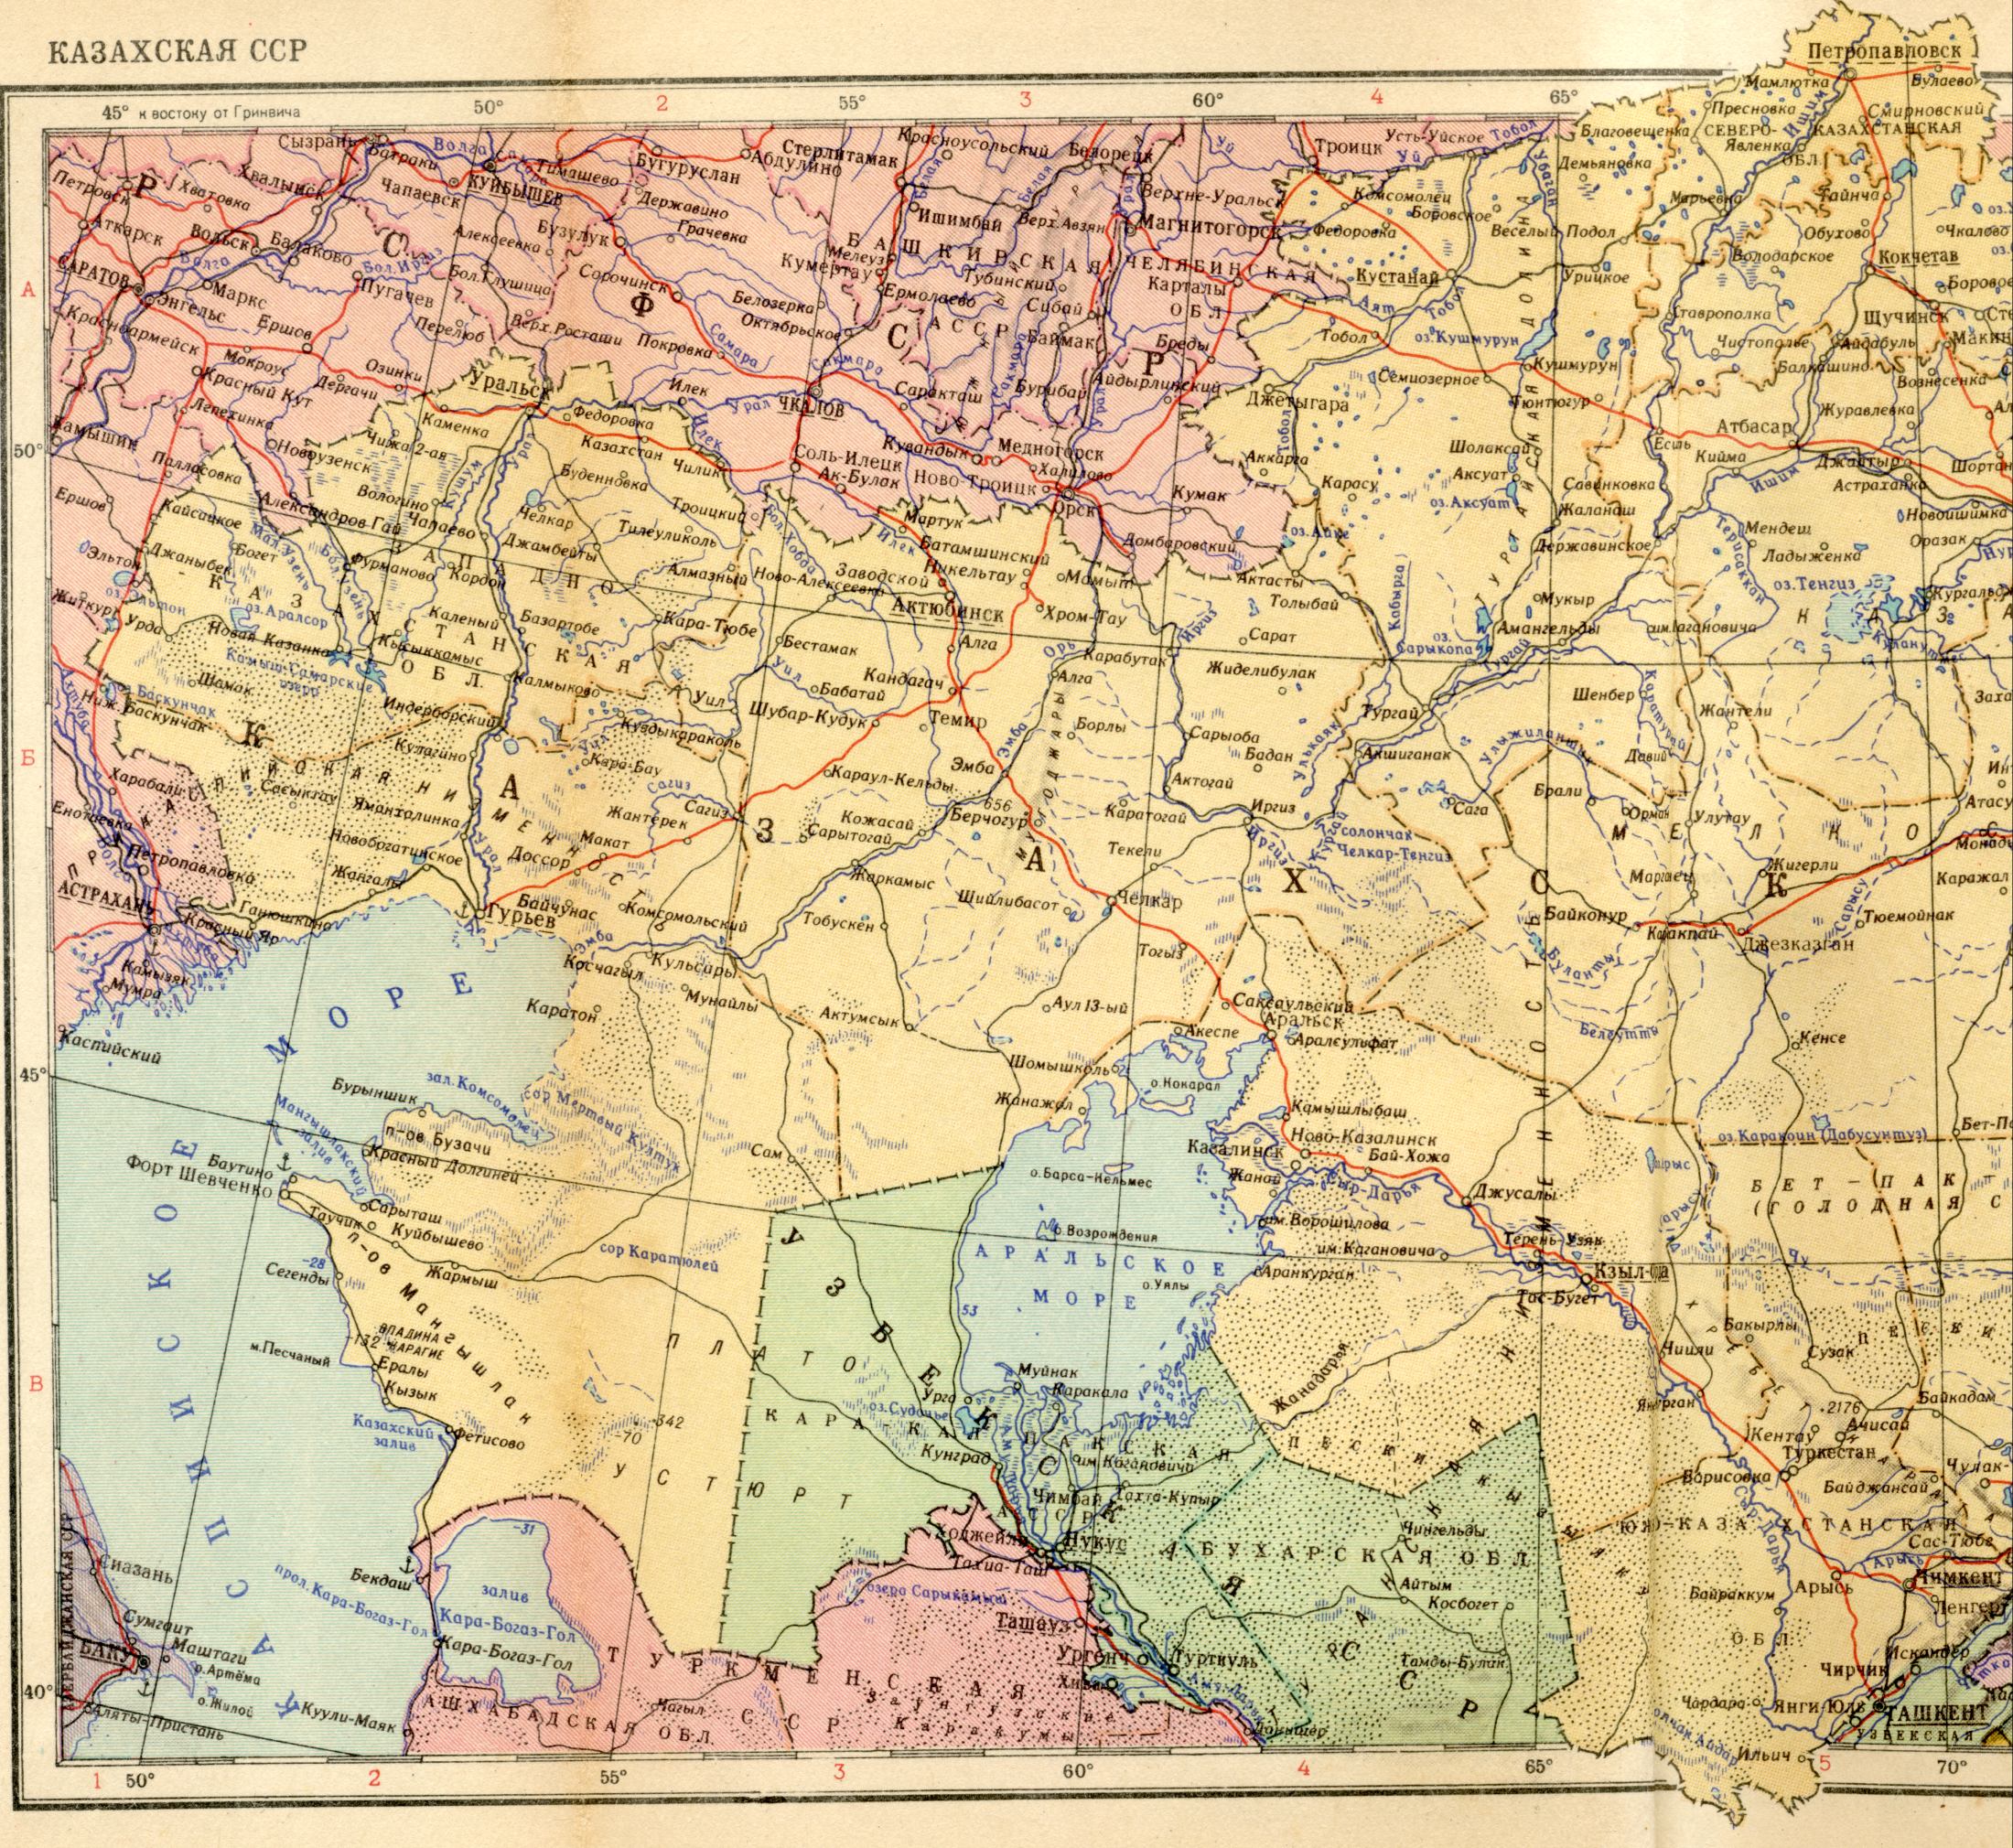 1956. Die politische Landkarte der Welt - Kasachische SSR 1956. Laden Sie eine detaillierte Karte der Aralsee